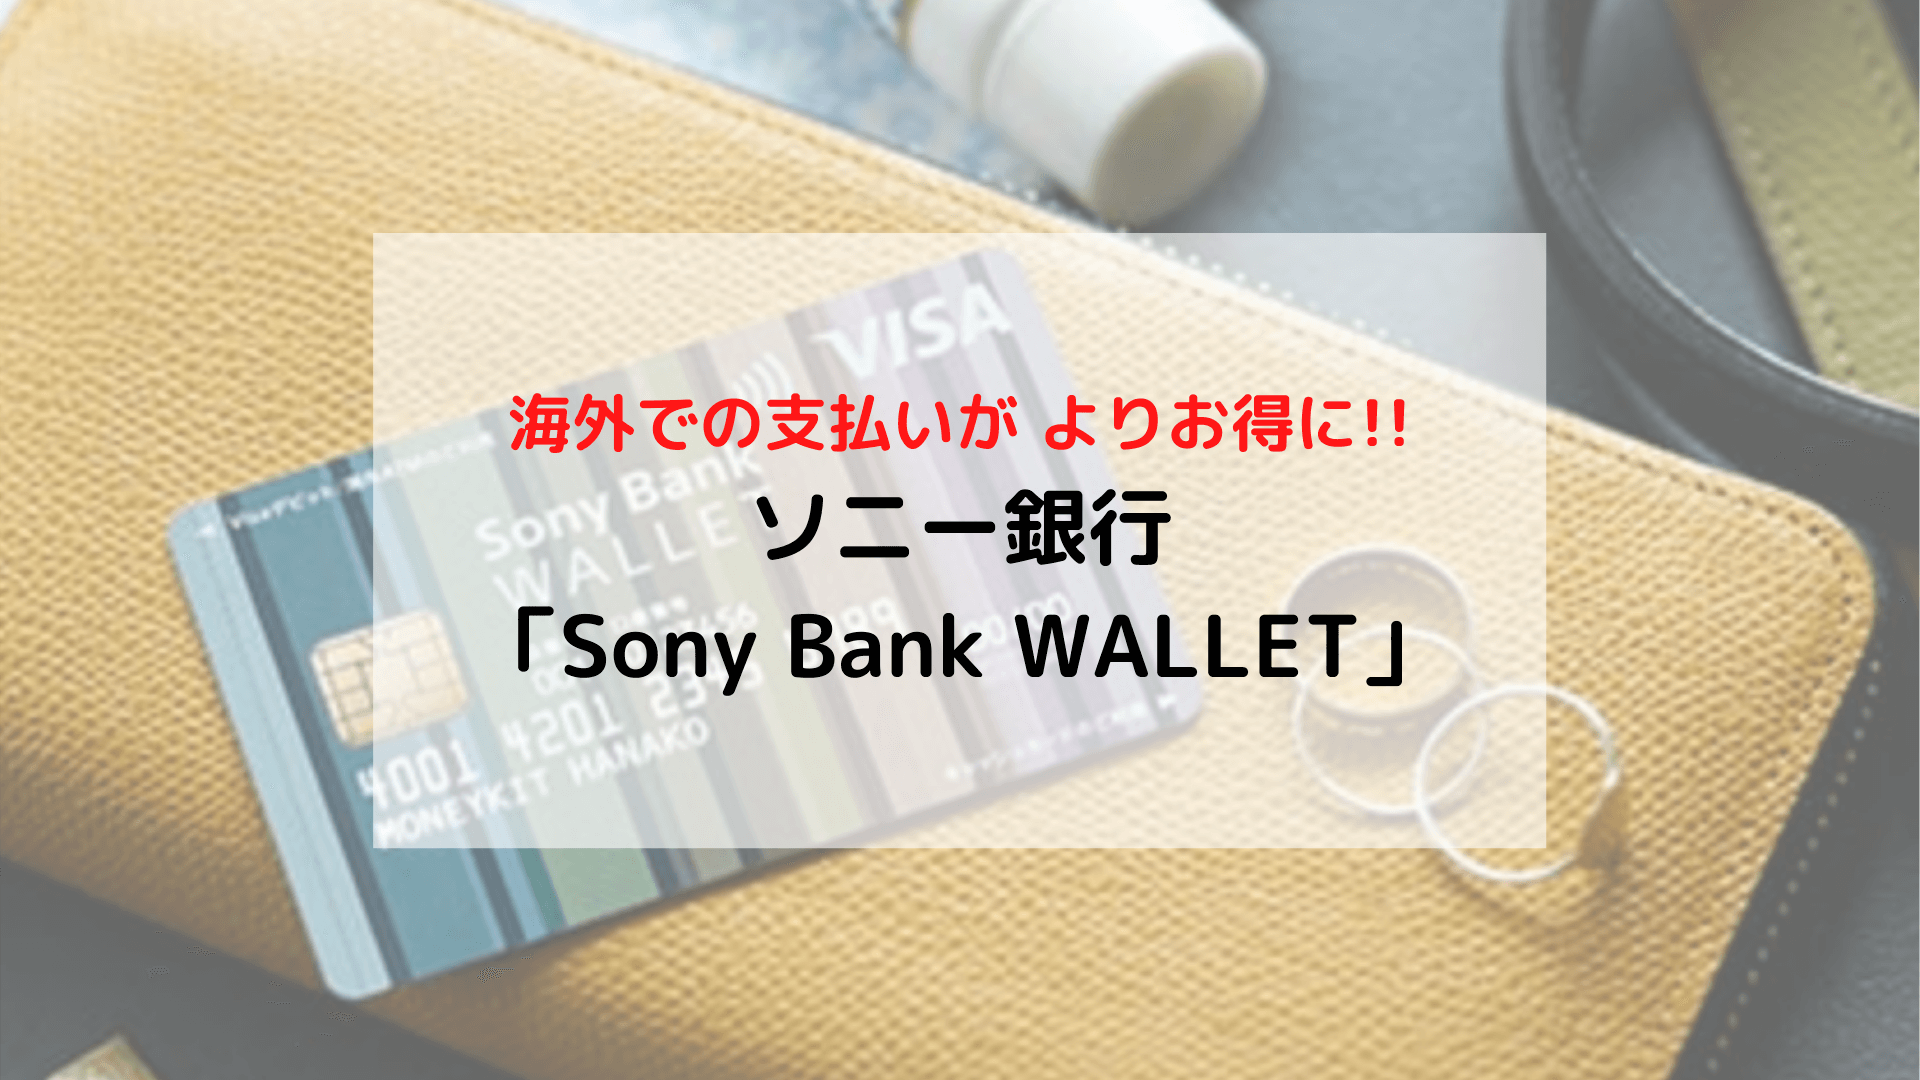 【旅の準備】海外支払いでお得 ソニー銀行「Sony Bank WALLET(ソニーバンクウォレット) 」のメリット